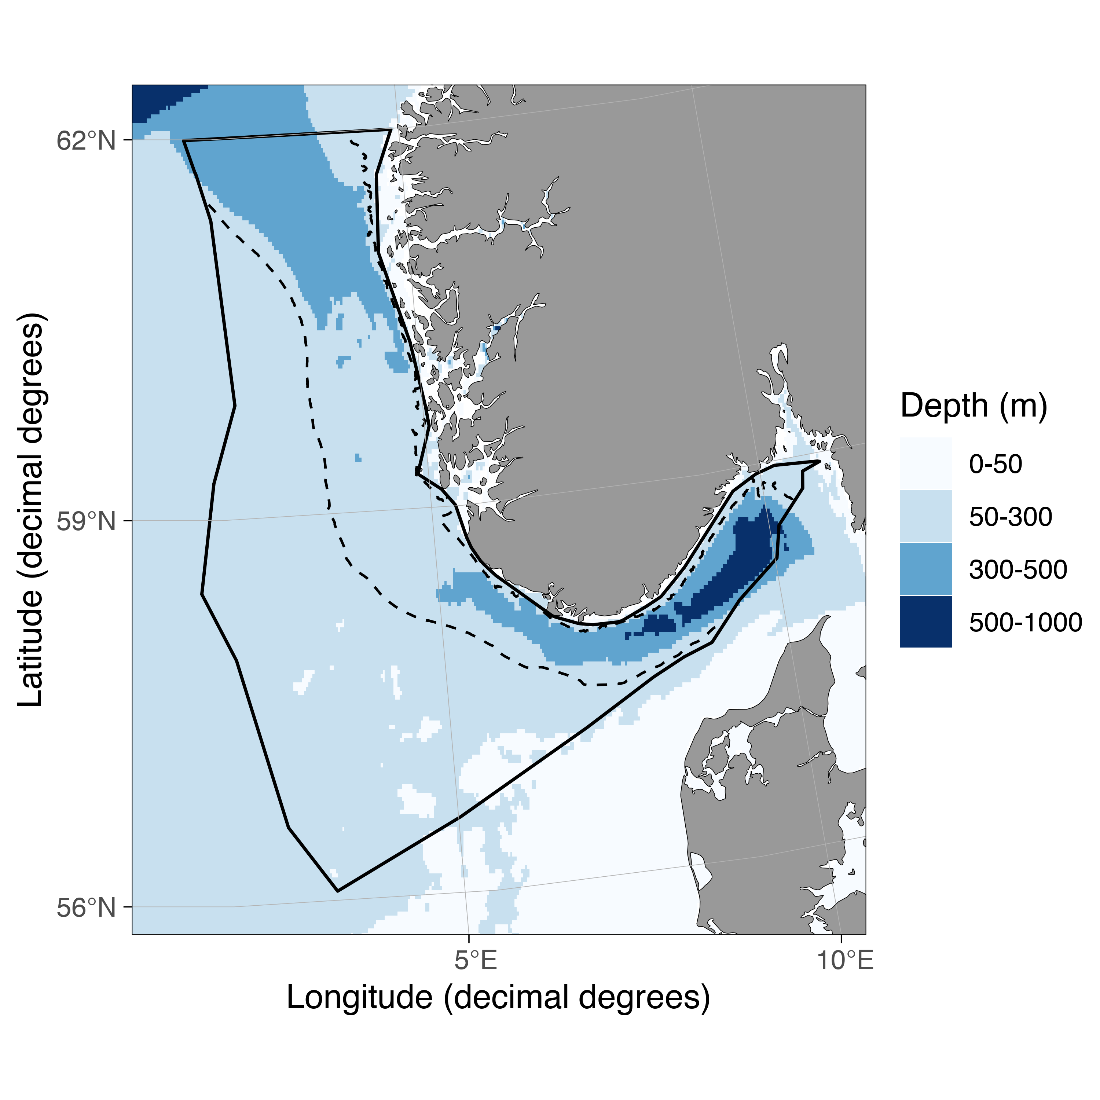 Figur 2.1.4.1 Kart over område for vurdering av økologisk tilstand i Nordsjøen og Skagerrak. Områder dypere enn 200 meter i Norskerenna, som ikke er inkludert, er markert med stiplet linje. Merk at vannsøyle over 200 meter i dette området er inkludert.